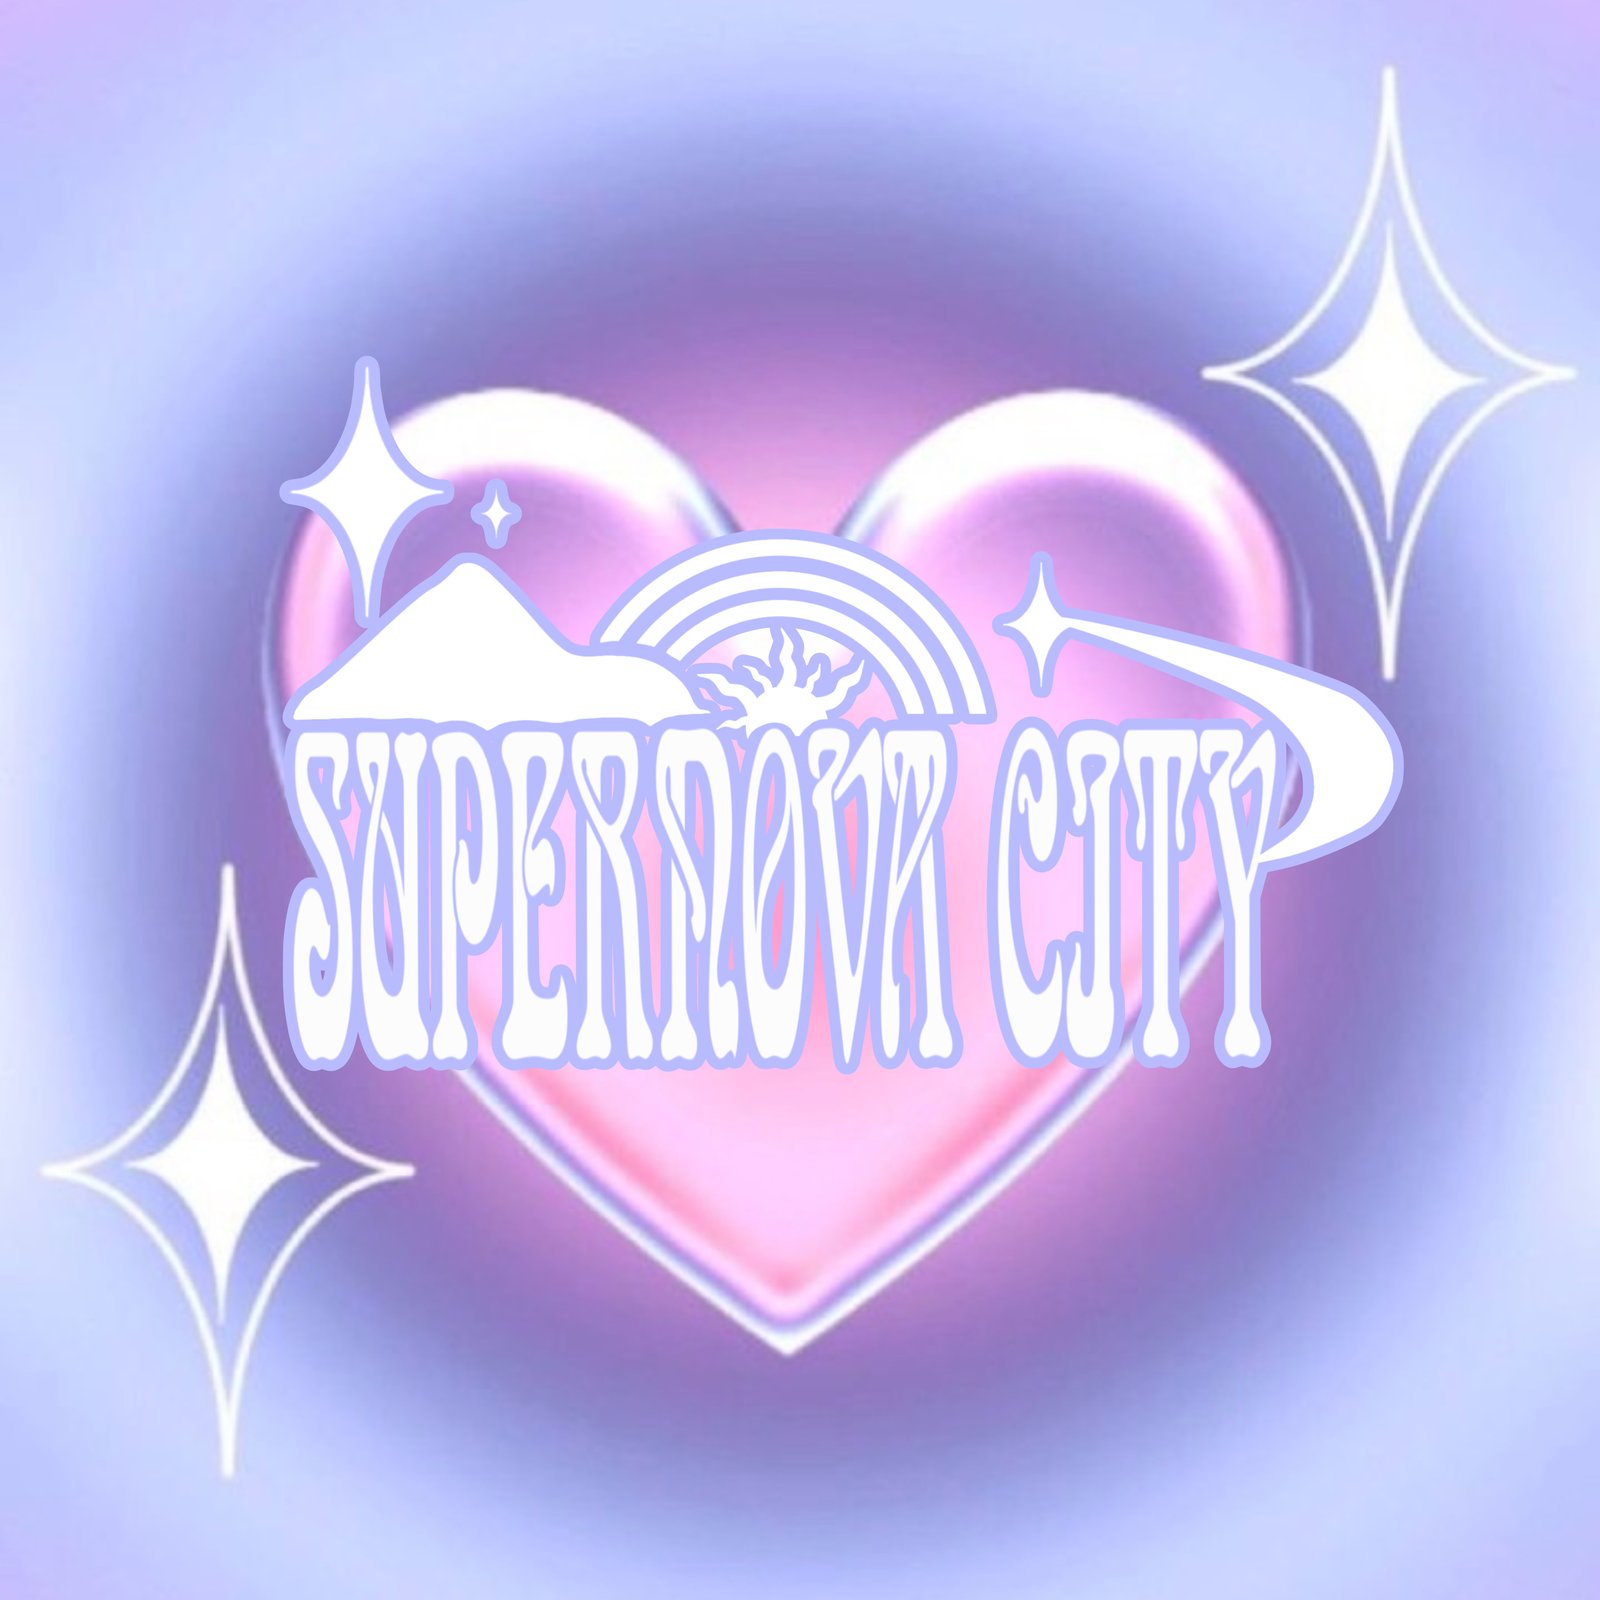 supernova tv show logo